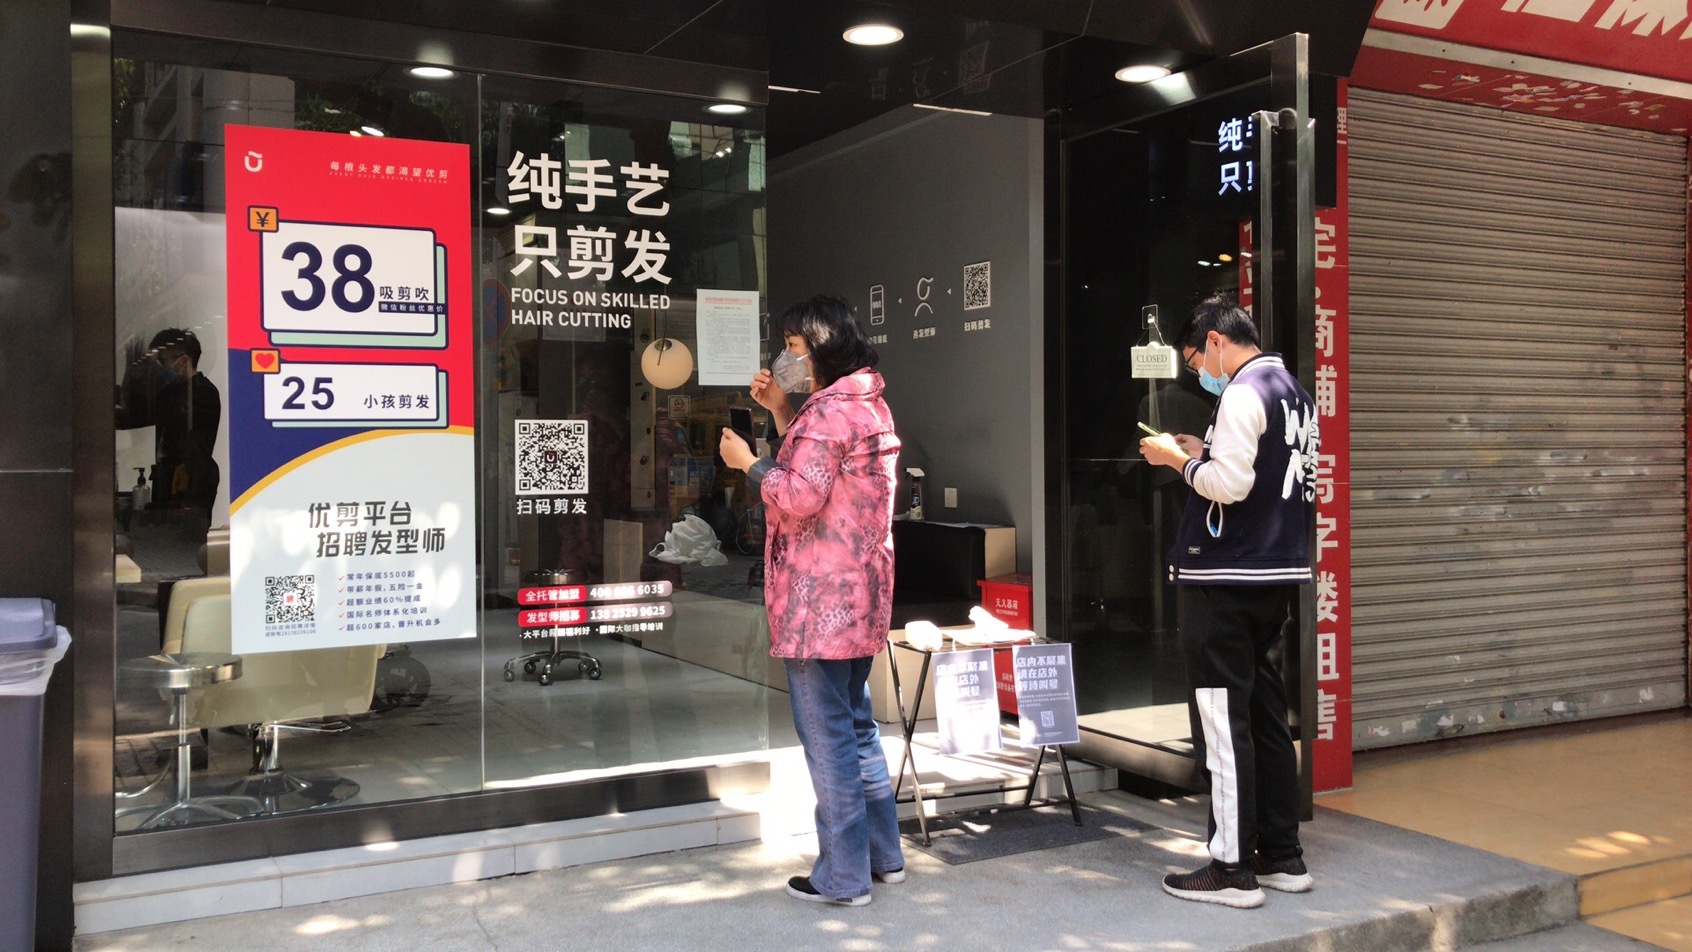 记者到访东兴南路一家理发店,发现店铺外陆续有顾客,扫码排队理发